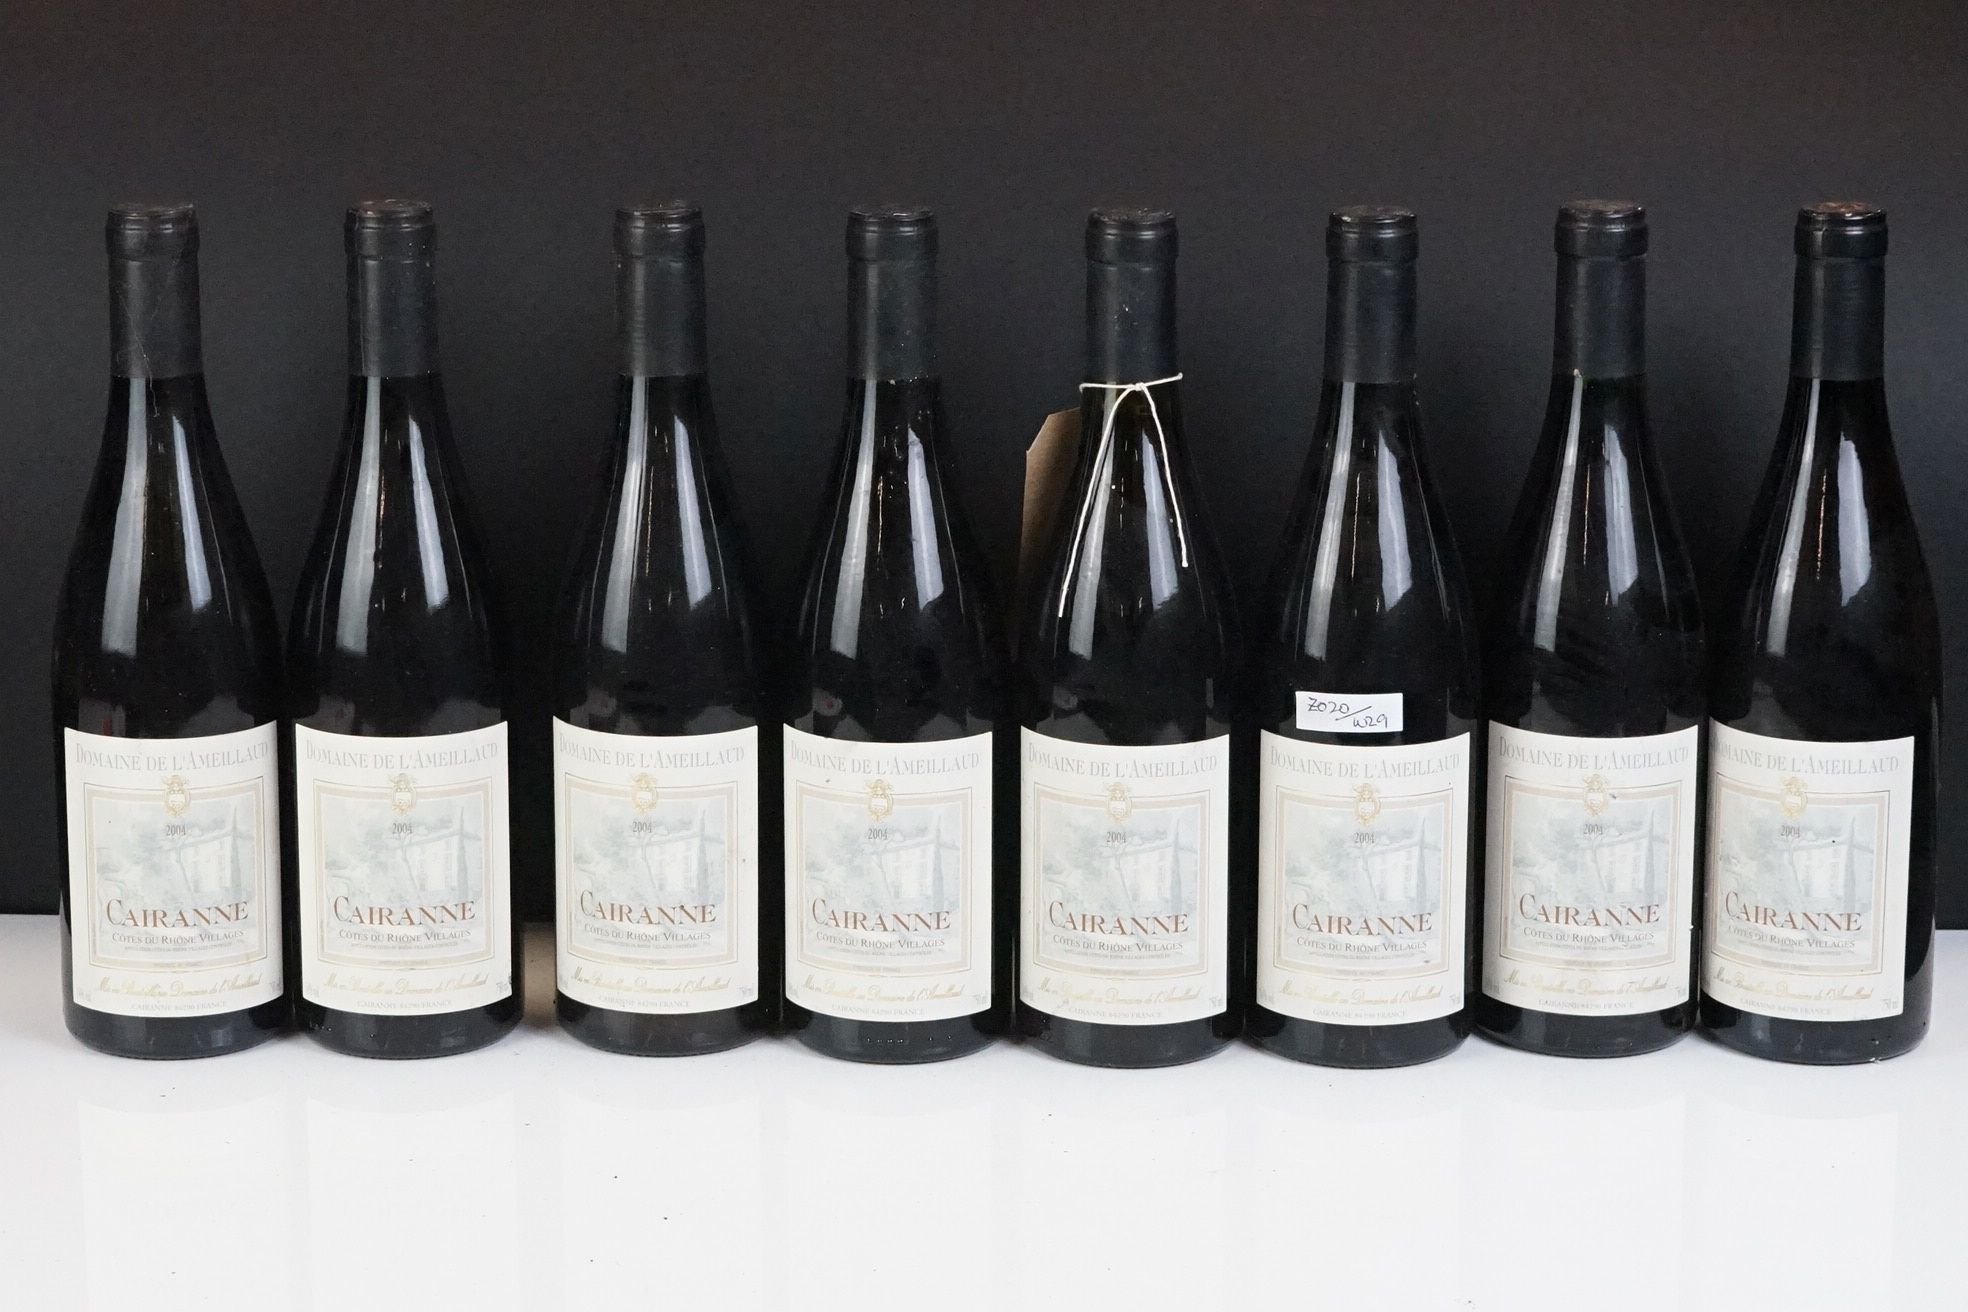 Cairanne, Cotes du Rhone Villages 2004, 8 bottles